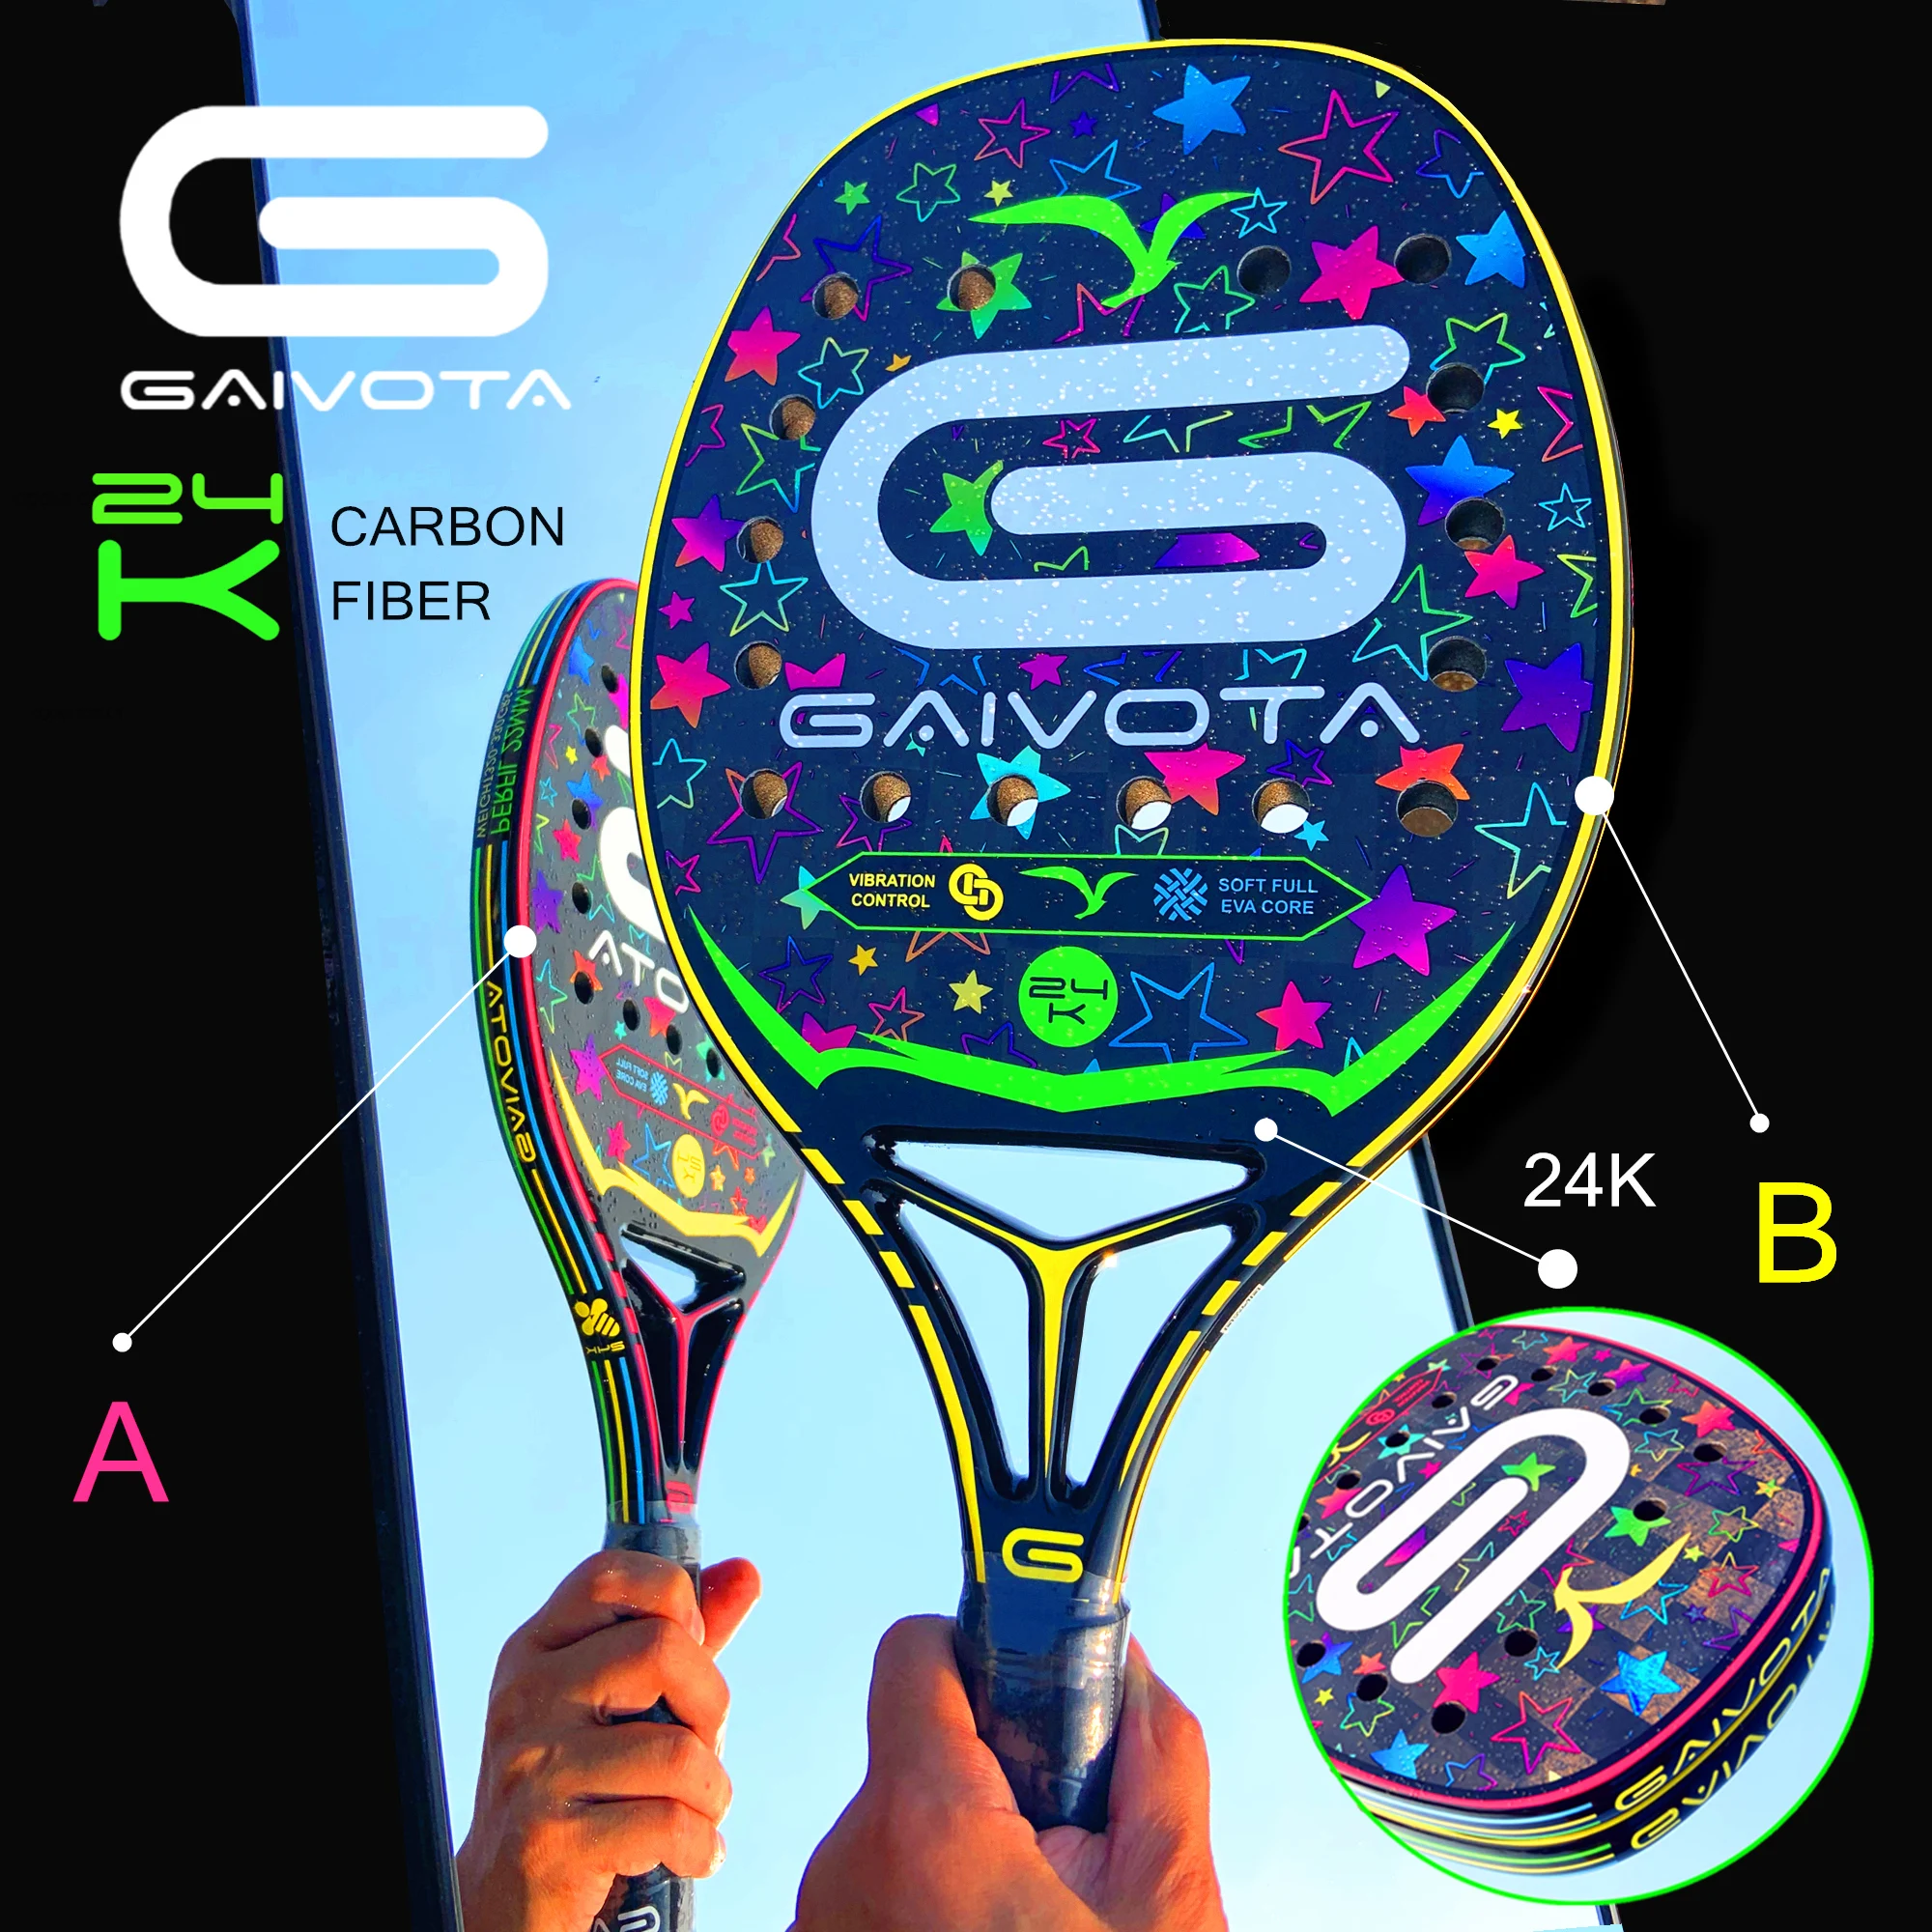 GAIVOTA – raquette de plage en Fiber de carbone 24K, édition limitée, qualité professionnelle, avec technologie holographique 3D, estampage des couleurs